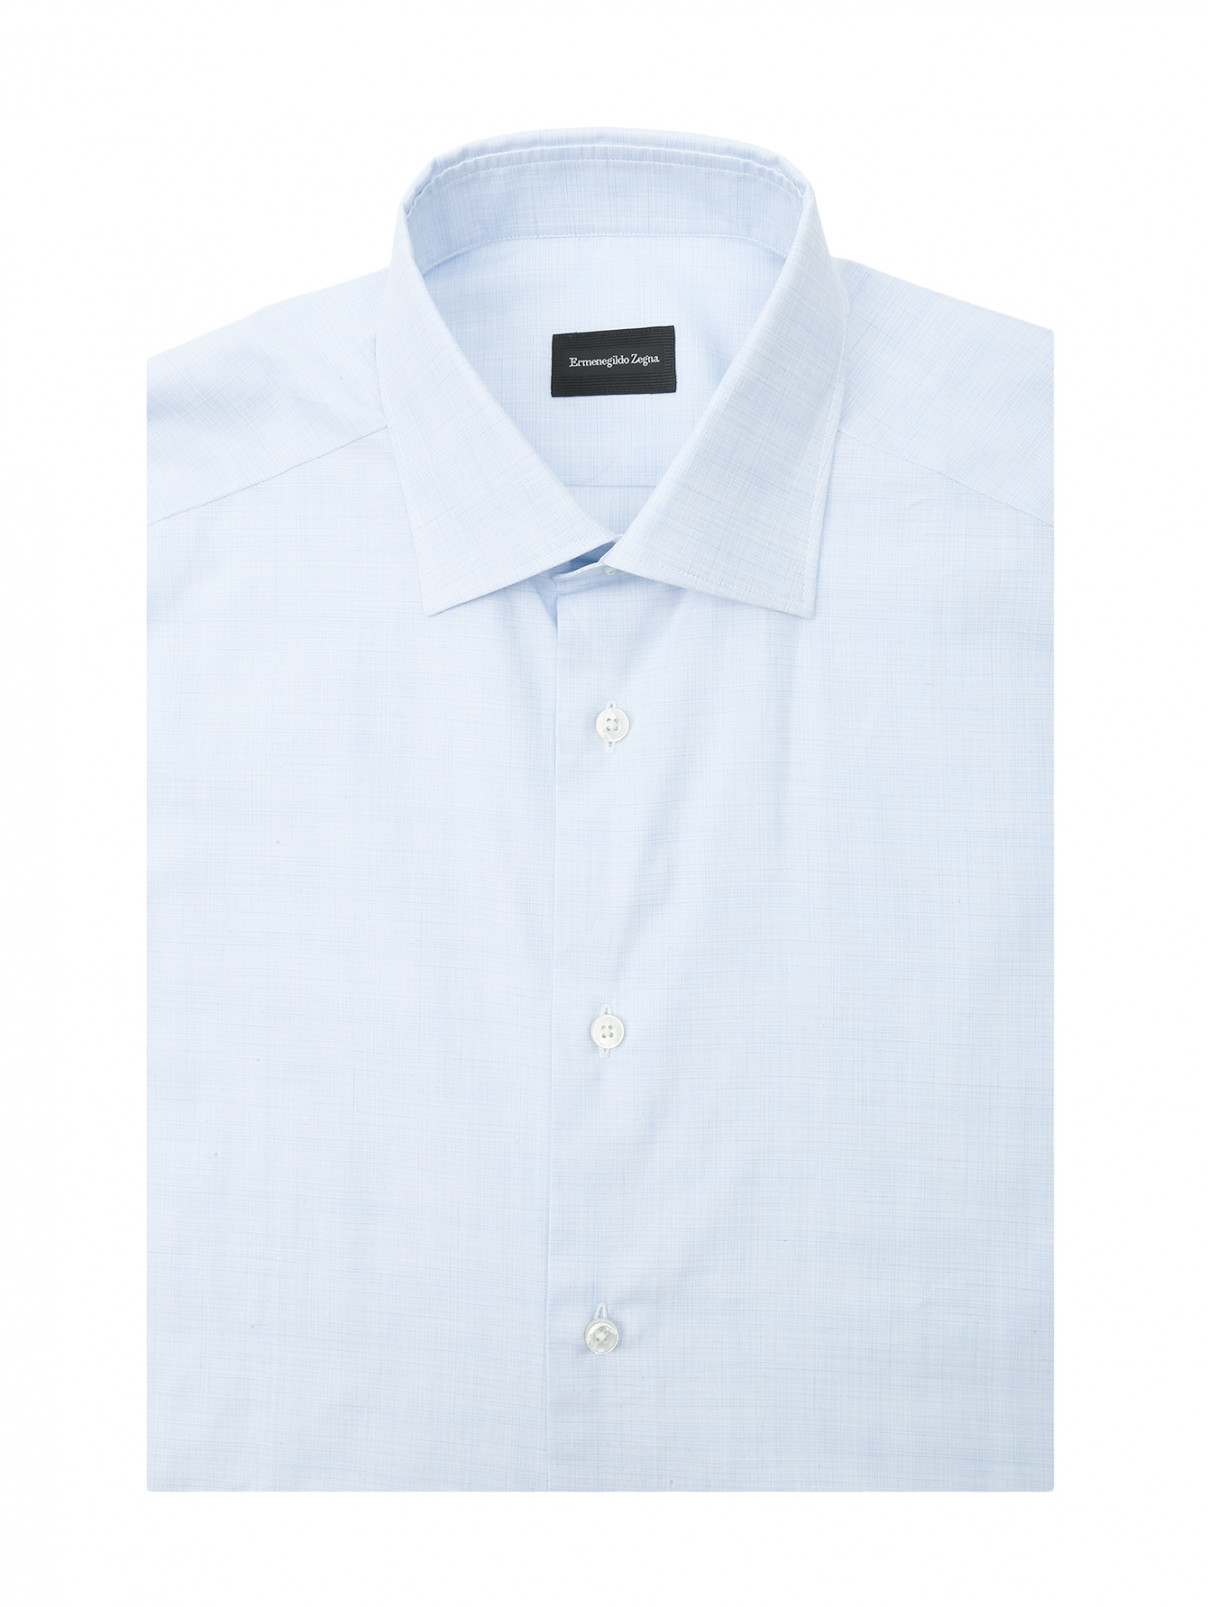 Рубашка из хлопка с короткими рукавами Ermenegildo Zegna  –  Общий вид  – Цвет:  Синий